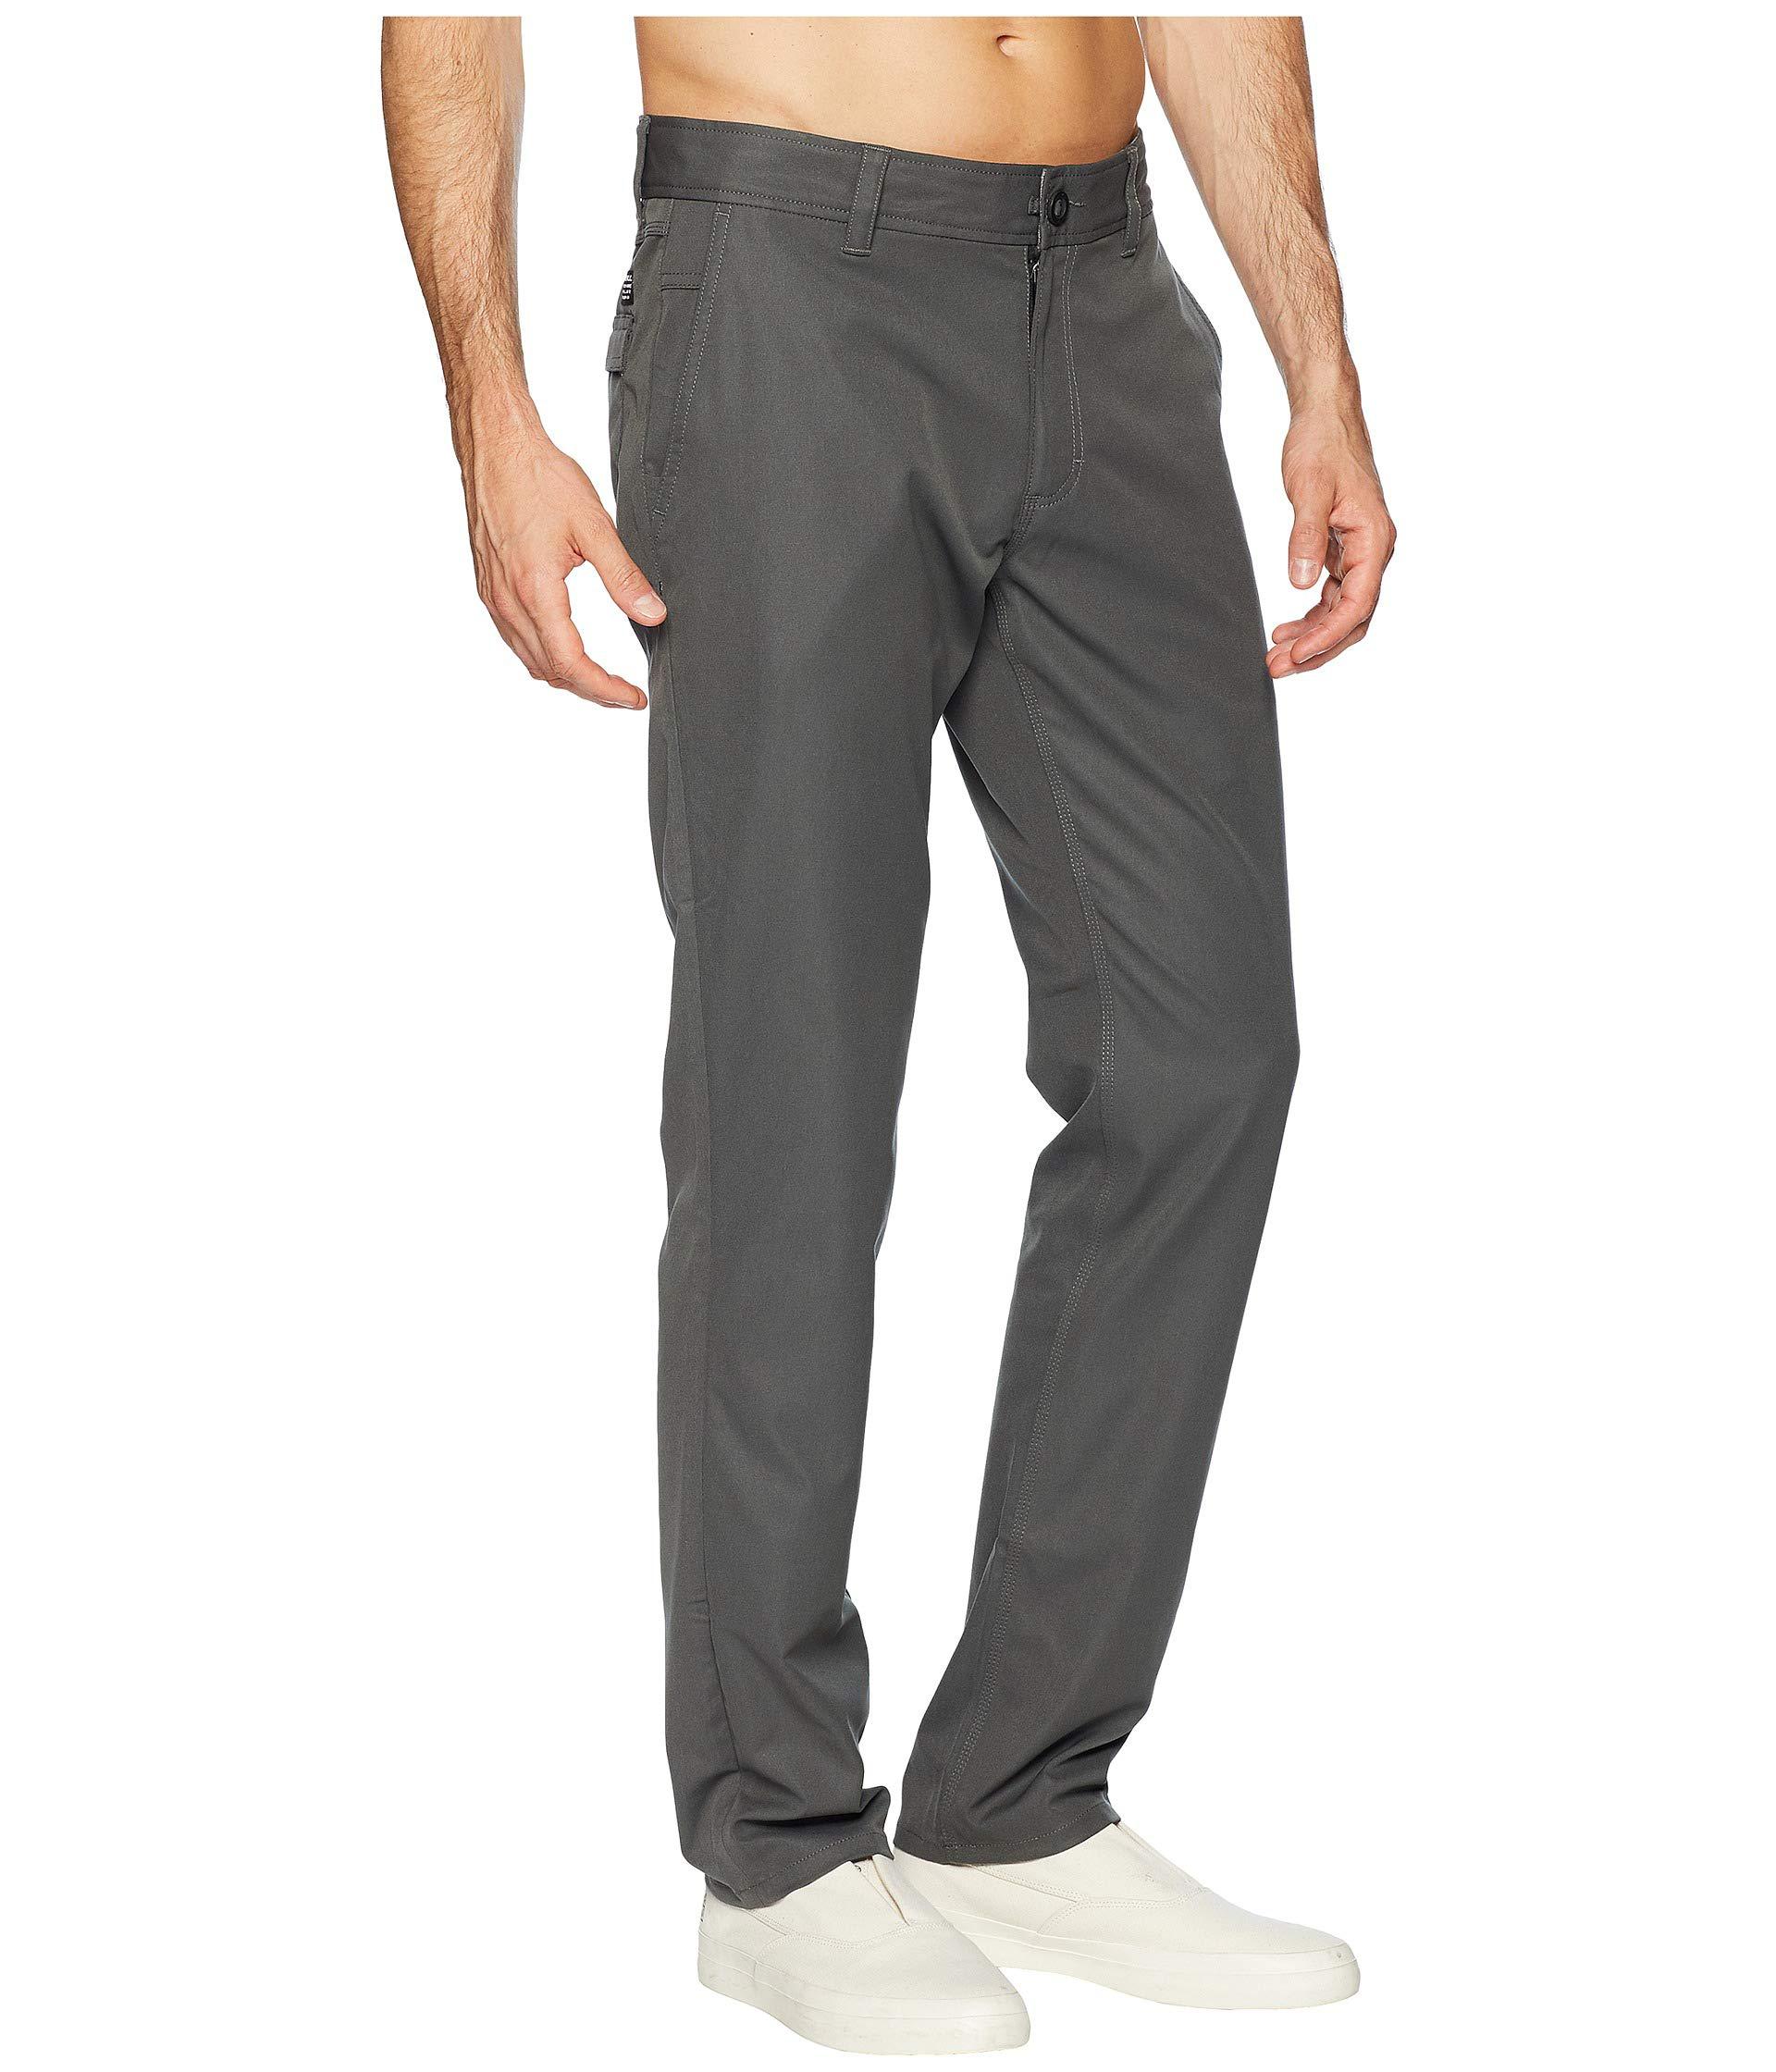 Lyst - O'Neill Sportswear Redlands Hybrid Pants (black) Men's Casual ...